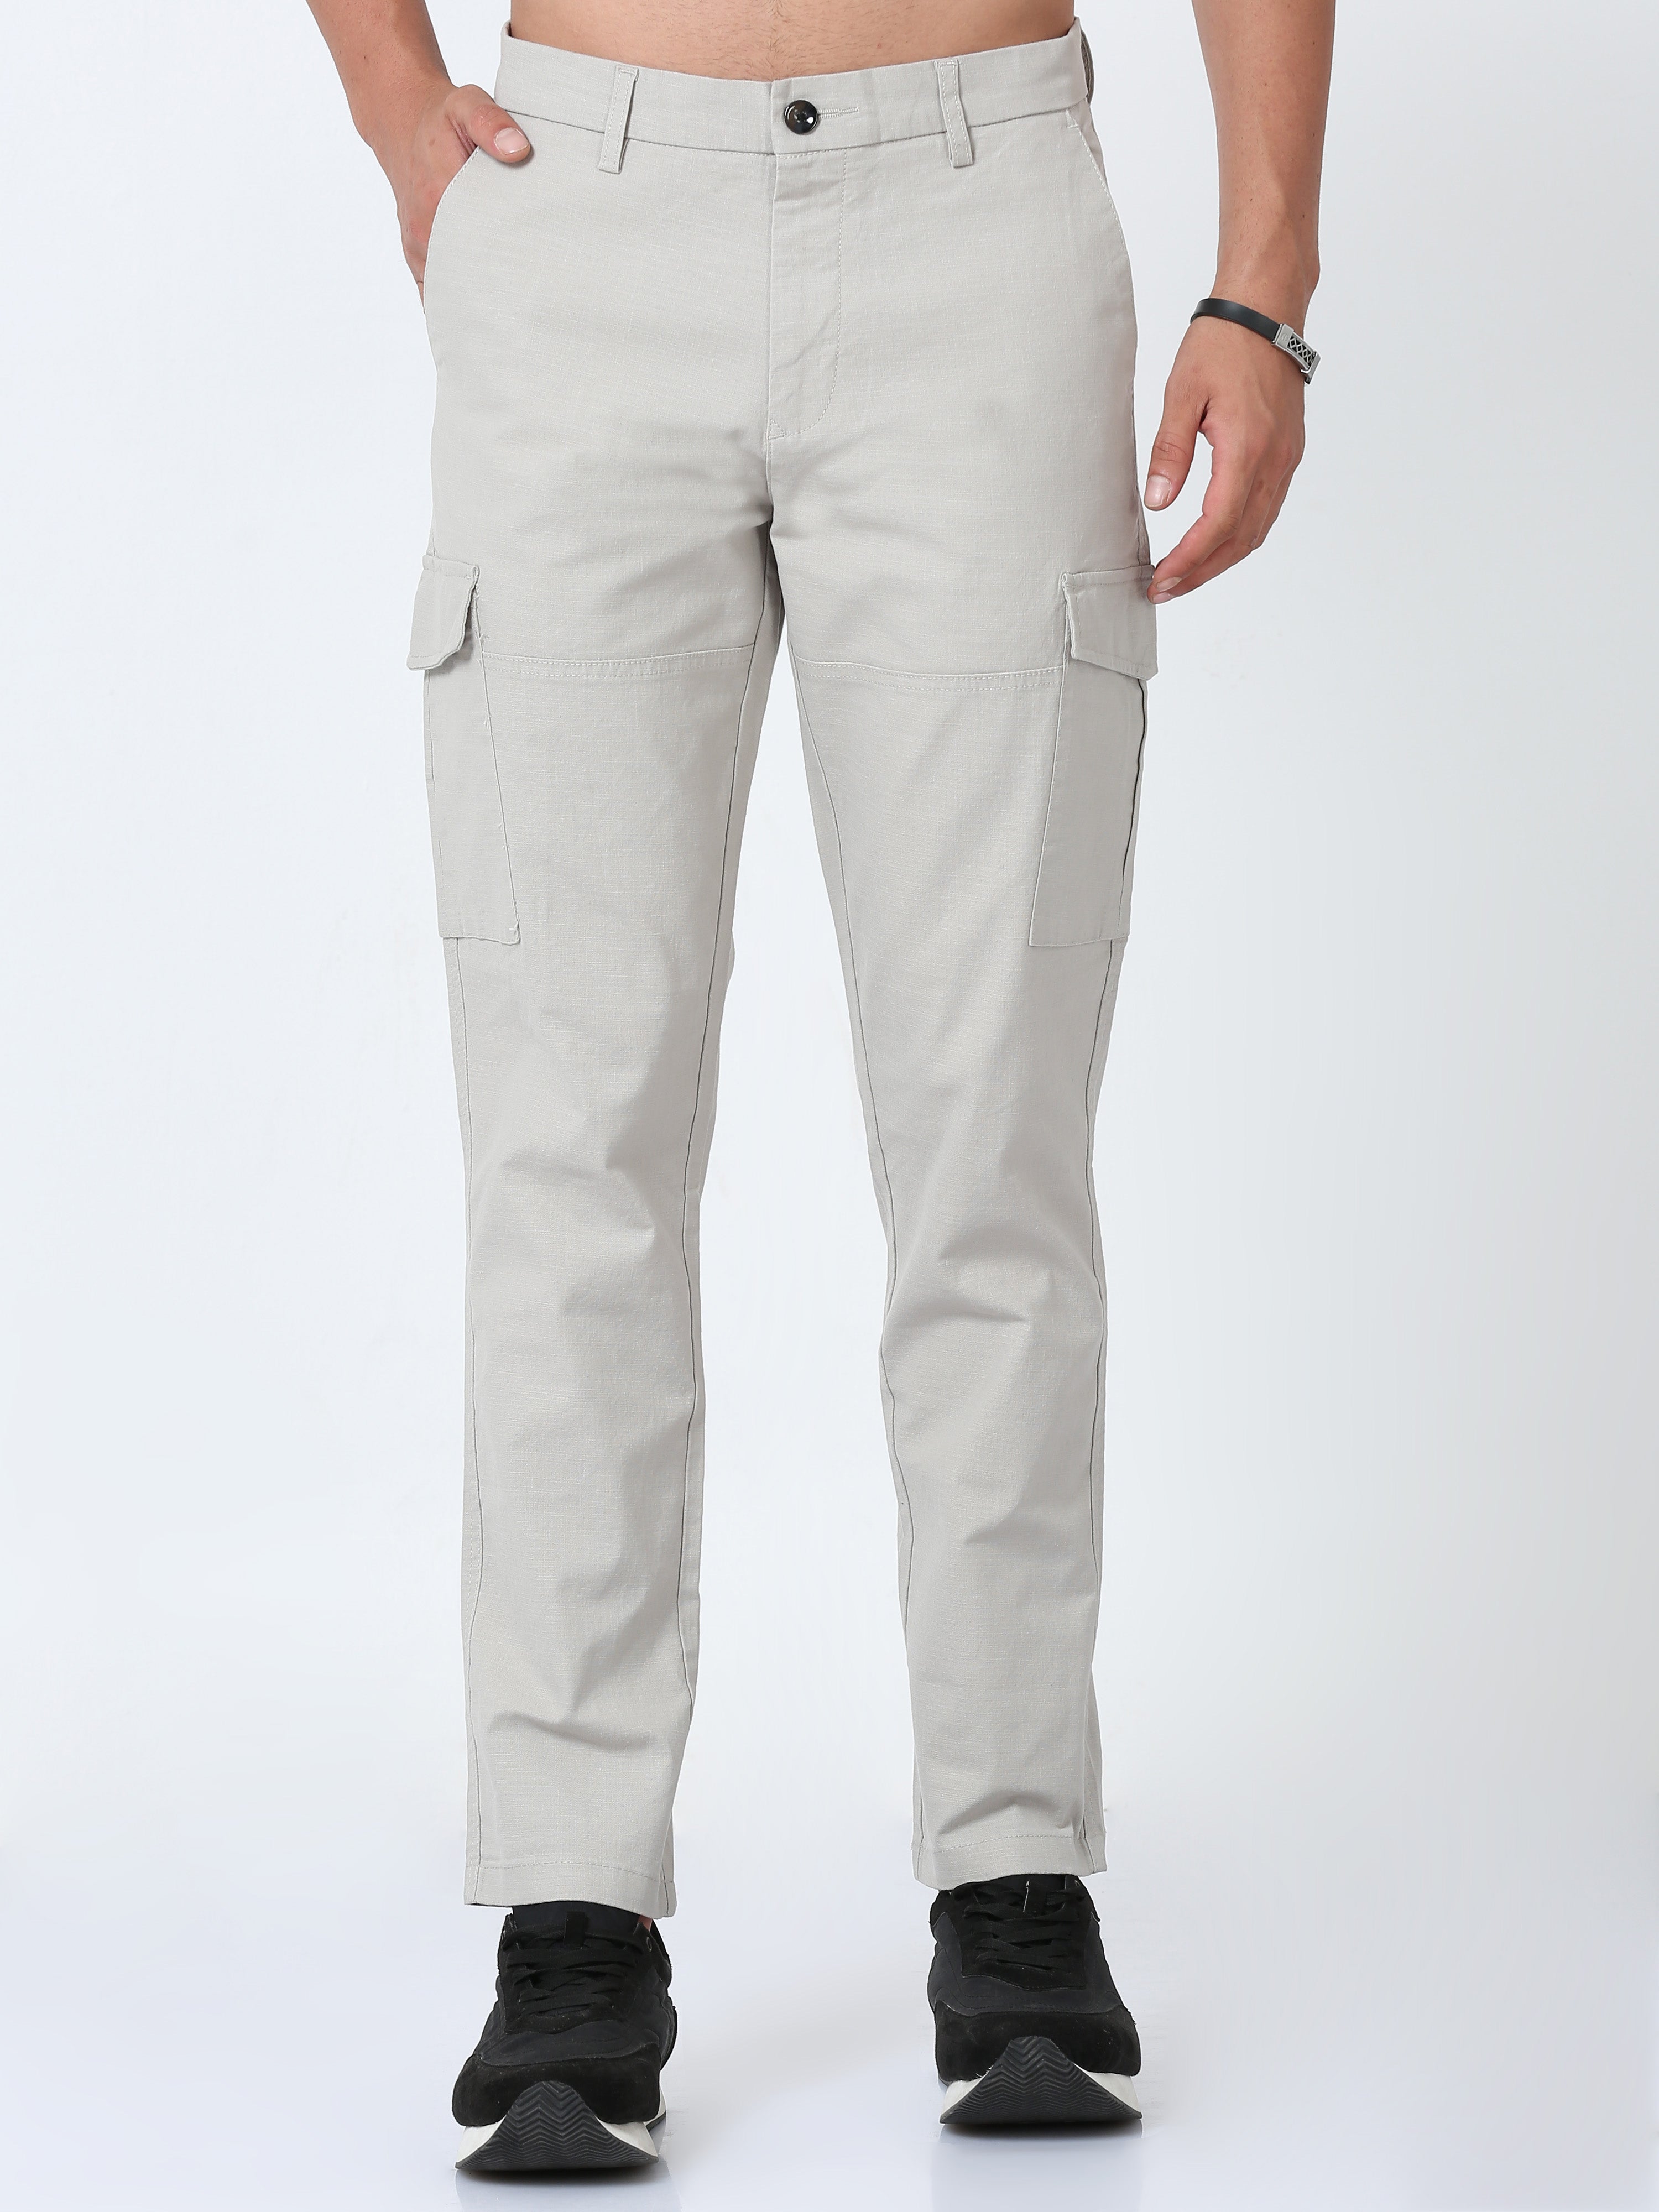 Ace Cargo Men's Pants - Grey | Levi's® US